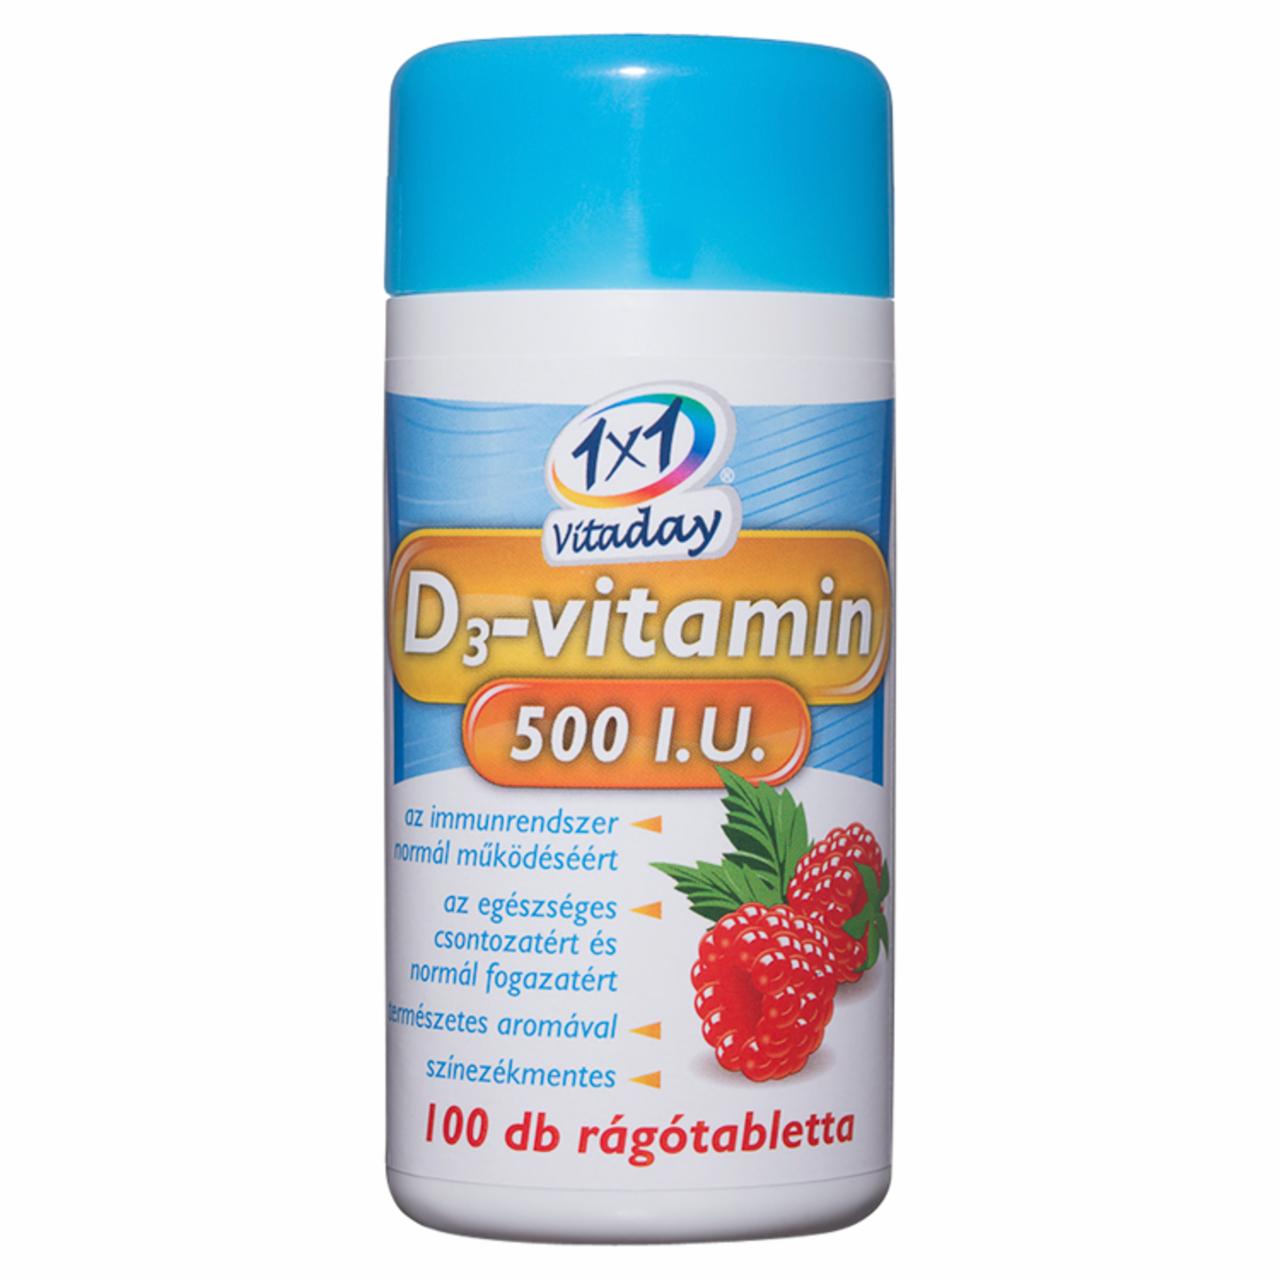 Képek - 1x1 Vitaday D3-vitamin málnaízű étrend-kiegészítő rágótabletta 100 db 48 g